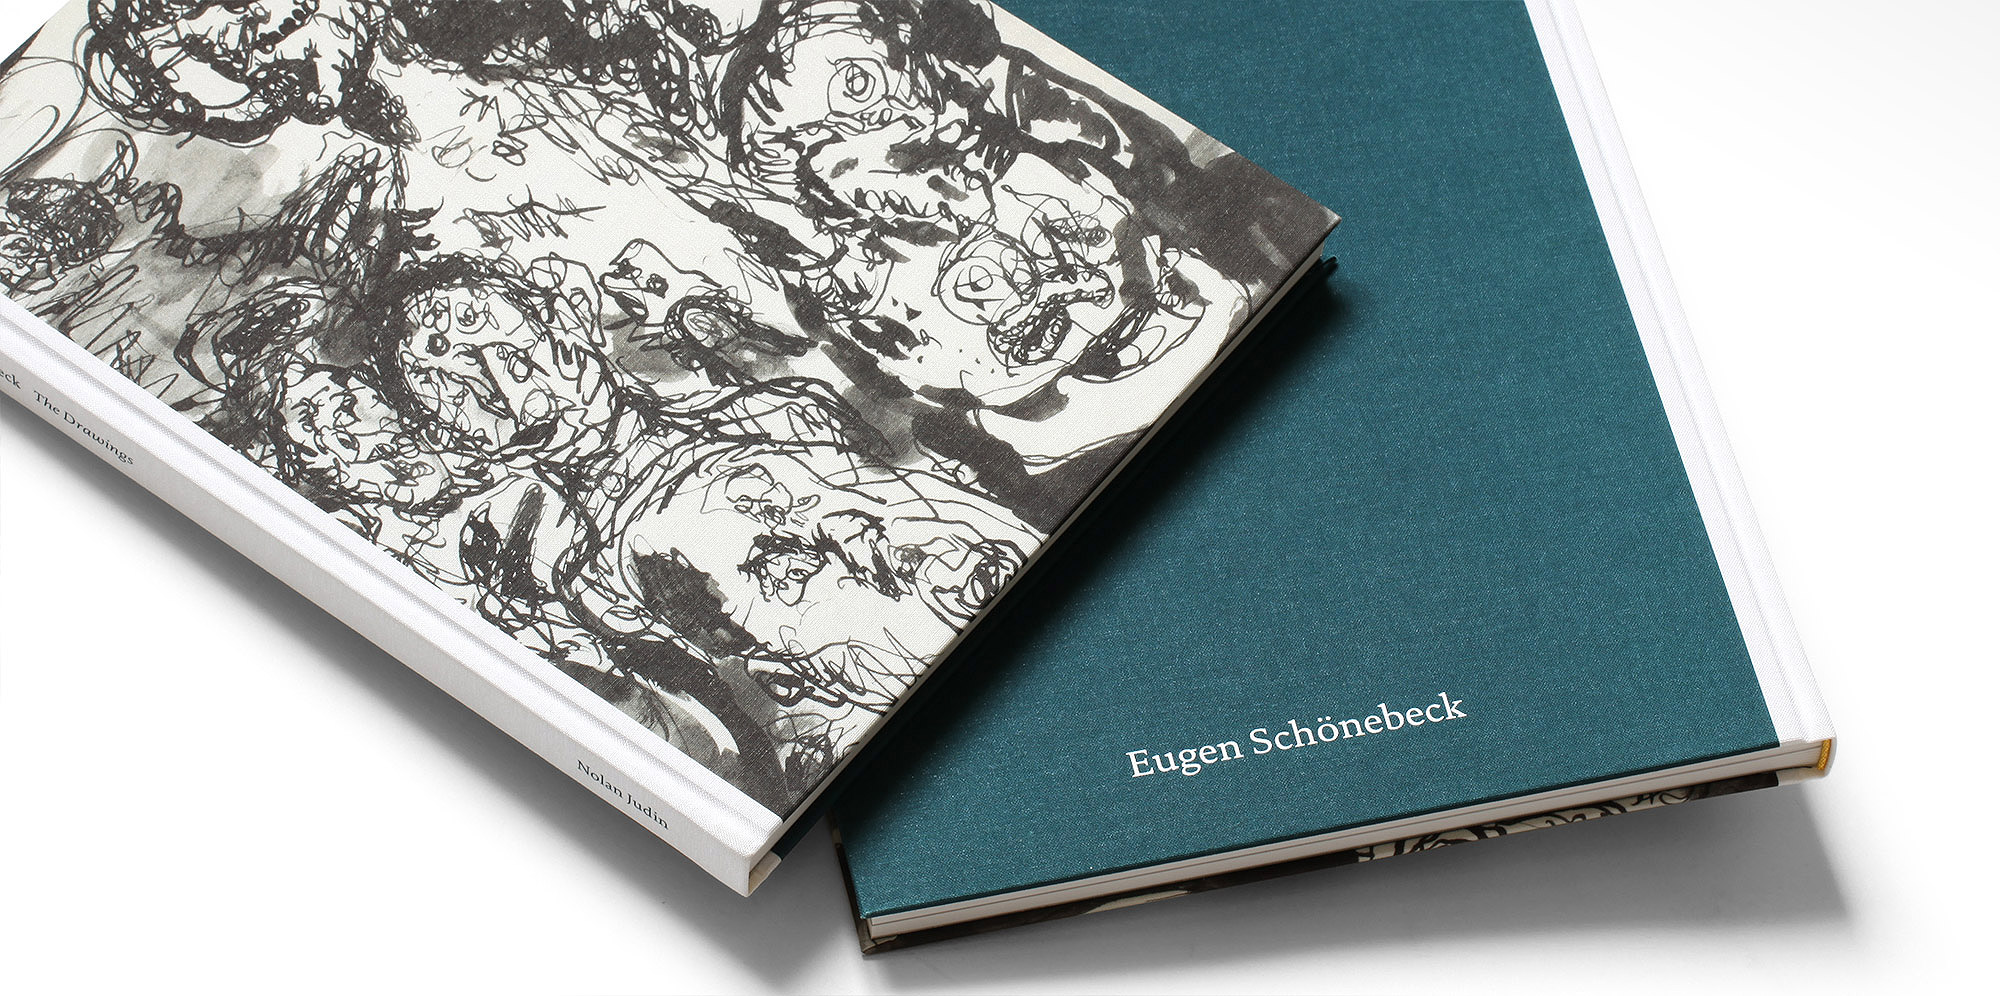 Eugen Schoenebeck book design for Gallery Judin Berlin by Jakob Straub